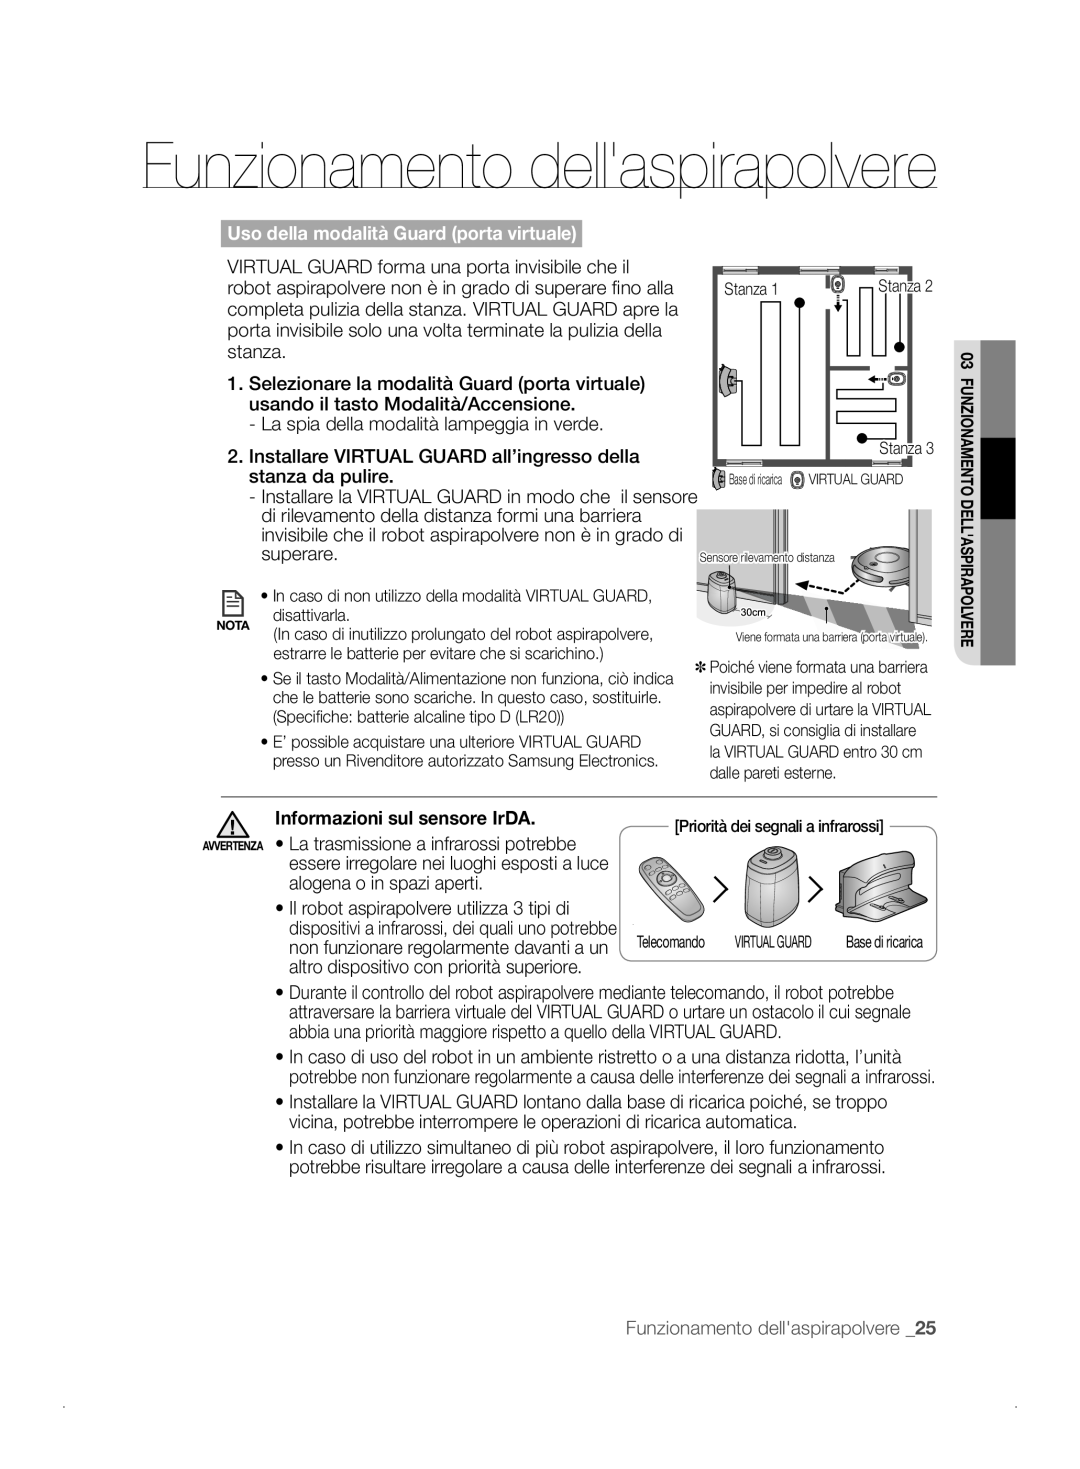 Samsung VCR8841T3B/XEF manual Funzionamento dellaspirapolvere, Uso della modalità Guard porta virtuale 